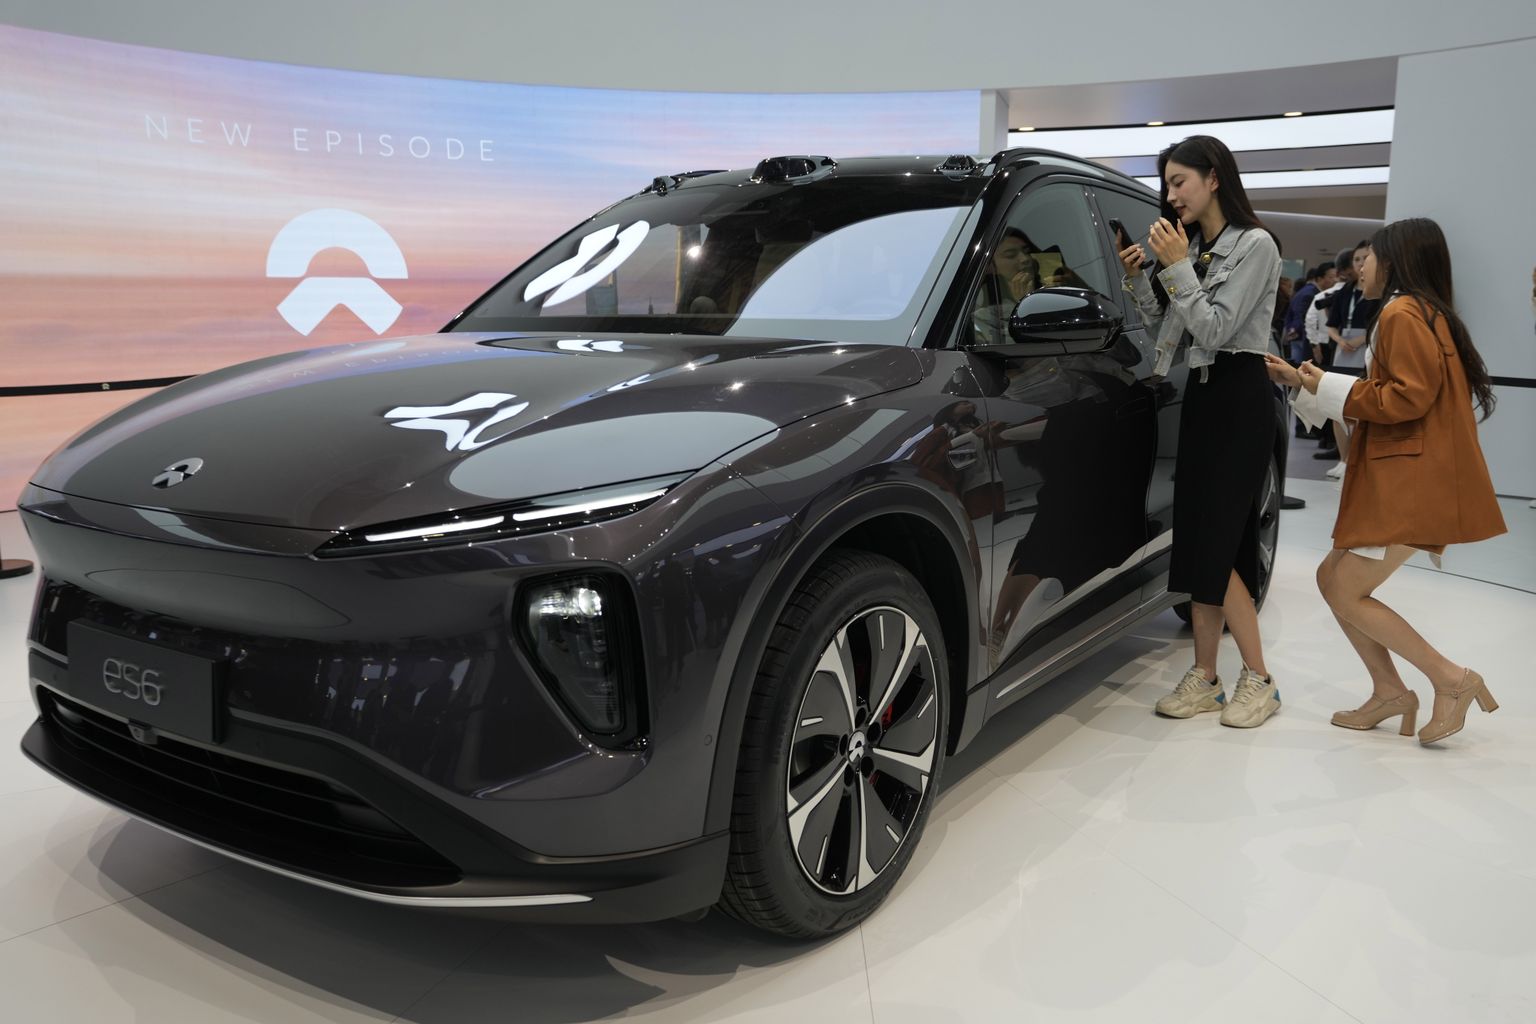 Naised imetlemas NIO mudelit es6 automessil Shanghais 18. aprillil 2023.